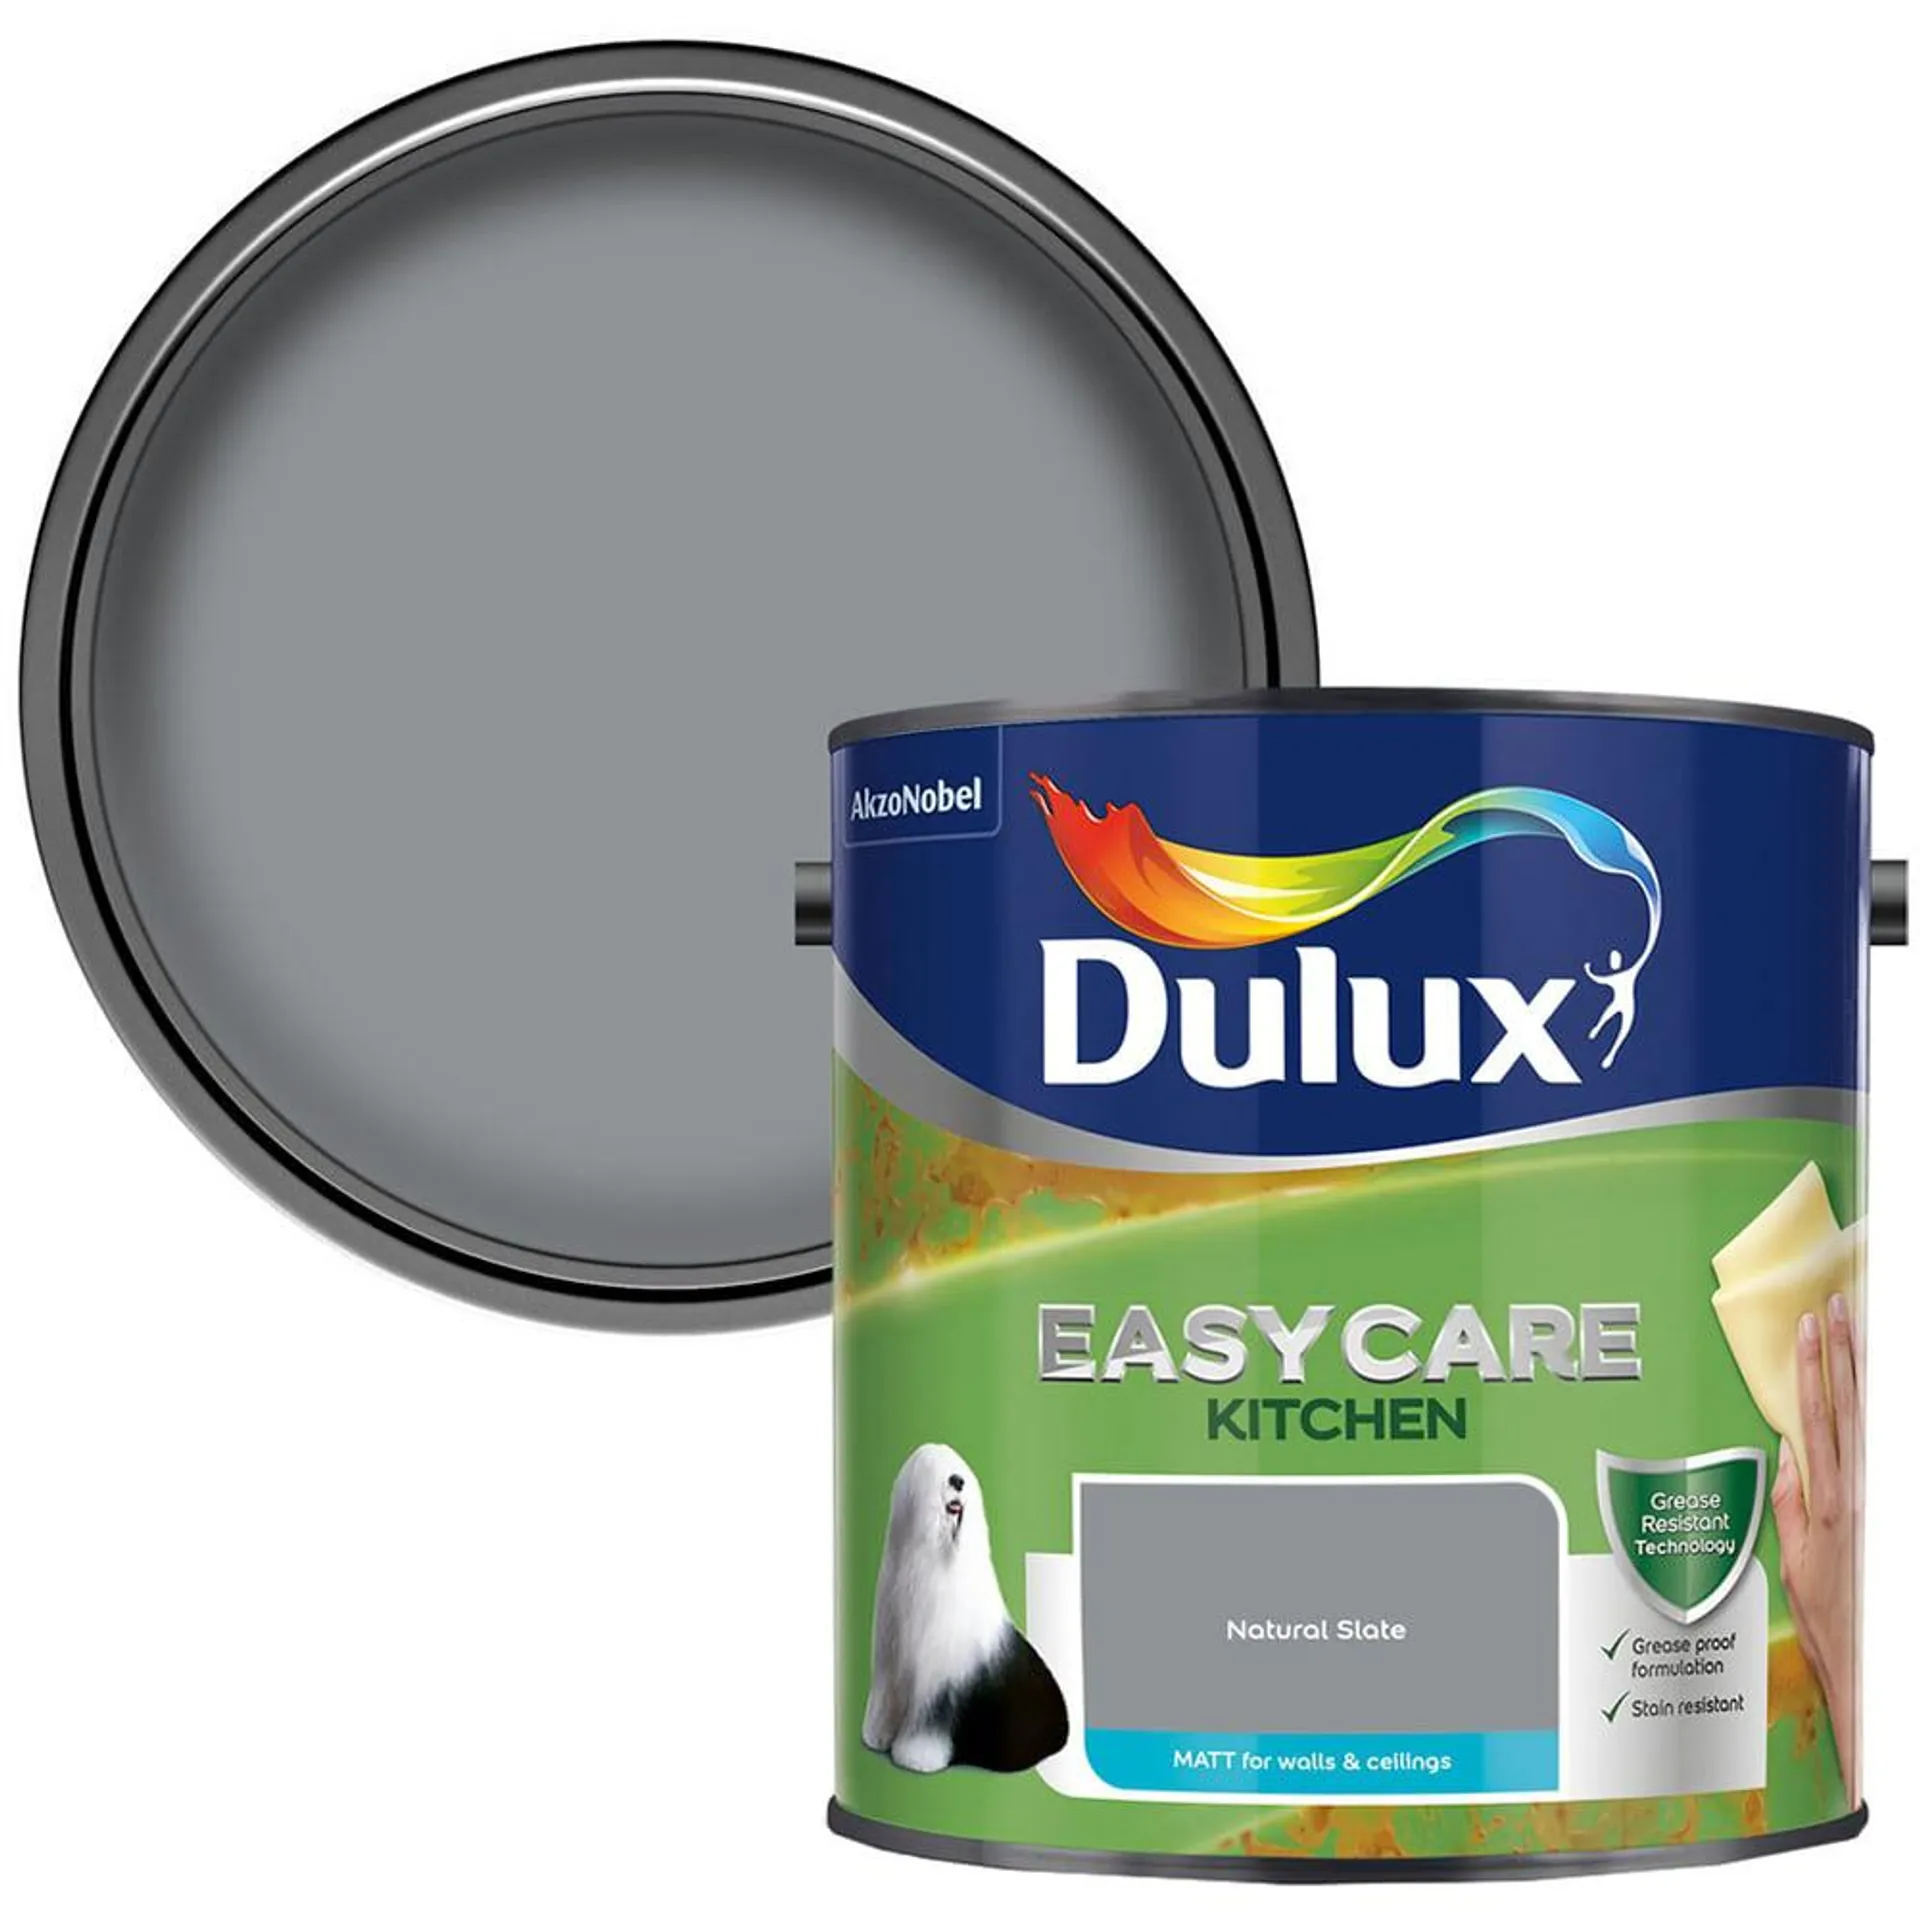 Dulux Easycare Kitchen Natural Slate Paint 2.5L